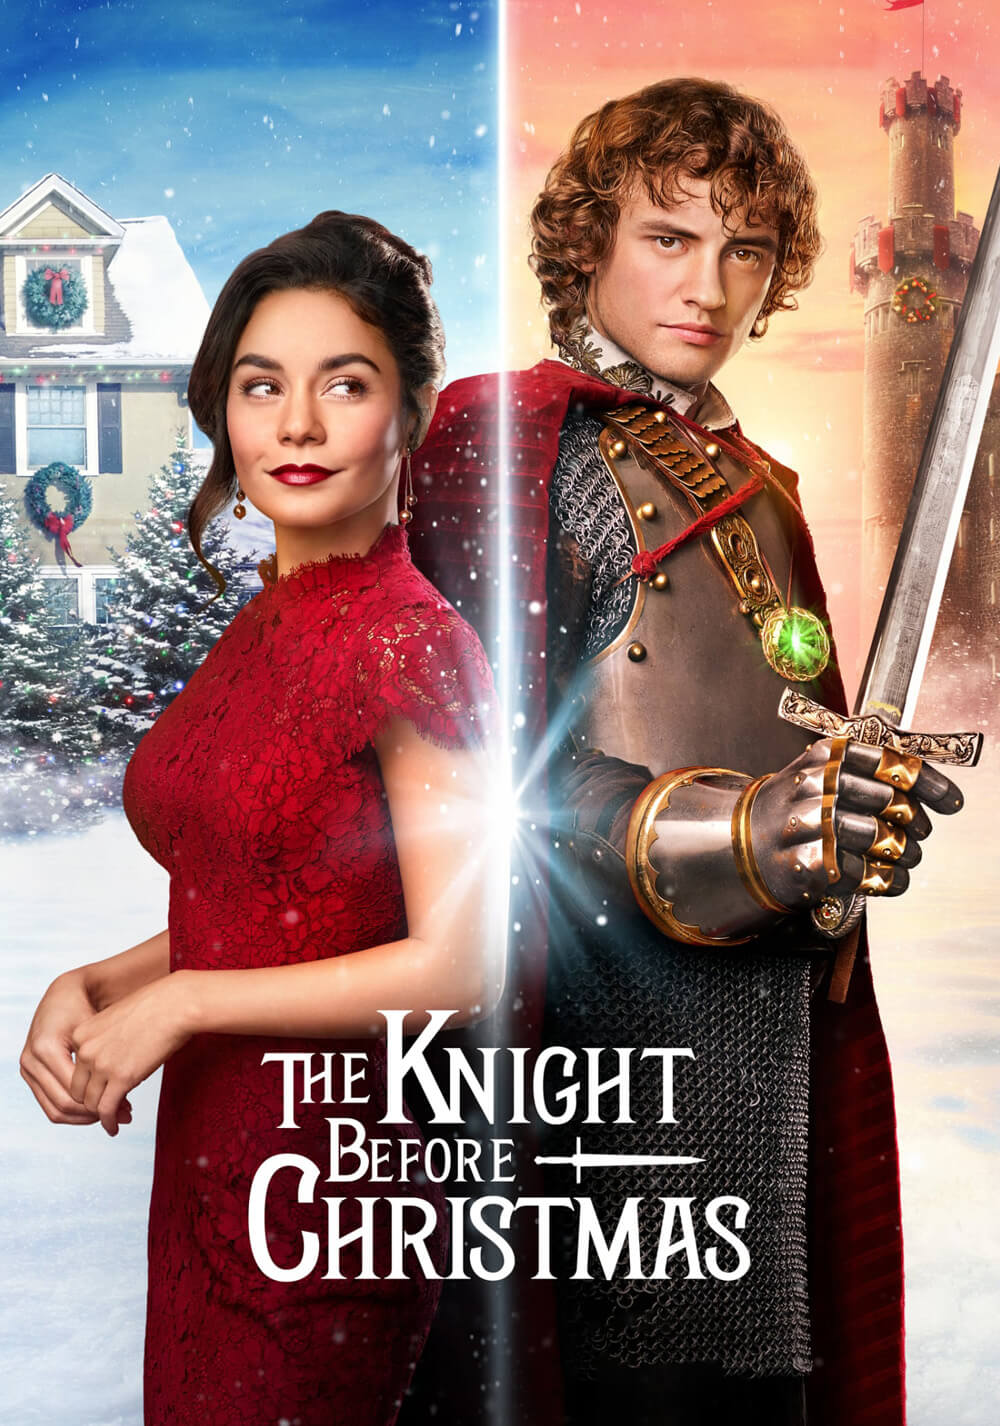 شوالیه قبل از کریسمس (The Knight Before Christmas)